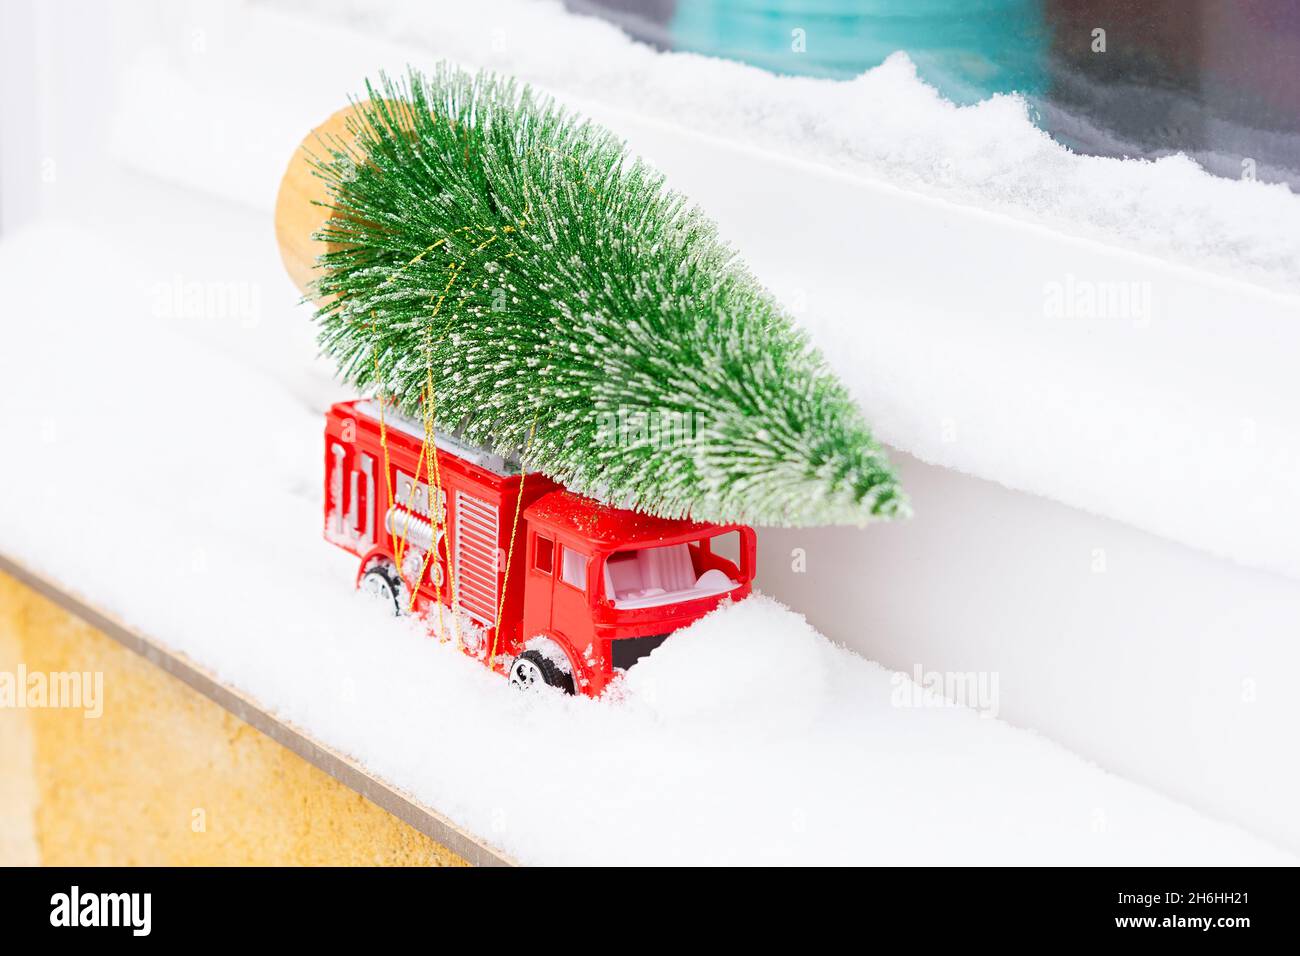 Voiture arbre de Noël neige.Livraison de jouets, l'humeur du nouvel an, cadeaux sur une voiture miniature rouge pour enfants dans la neige.Le concept du nouvel an, Noël, h Banque D'Images